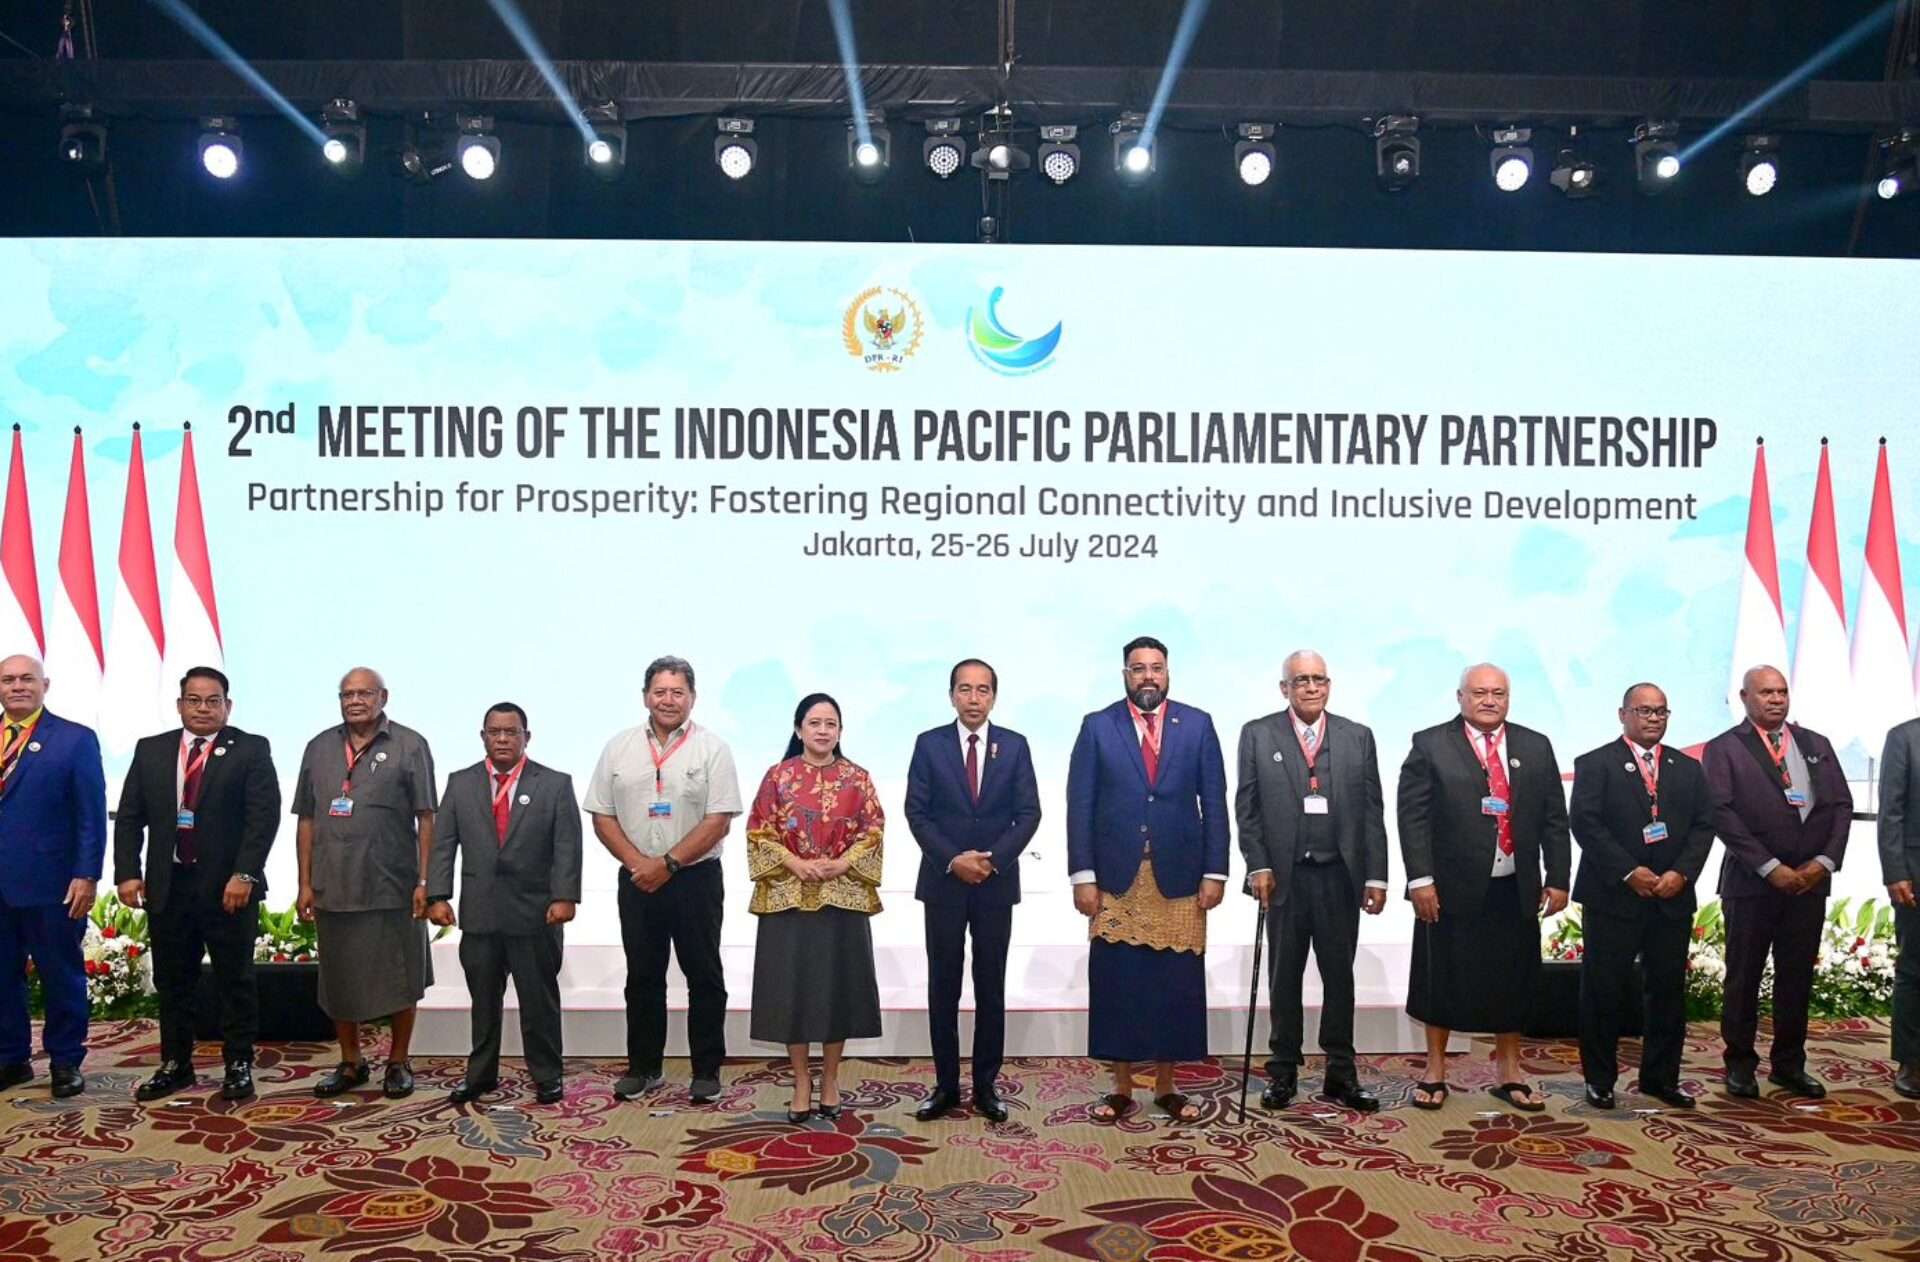 Dibuka Presiden Jokowi, Ketua MPR RI Bamsoet Apresiasi dan Dukung Penyelenggaraan IPPP 2024